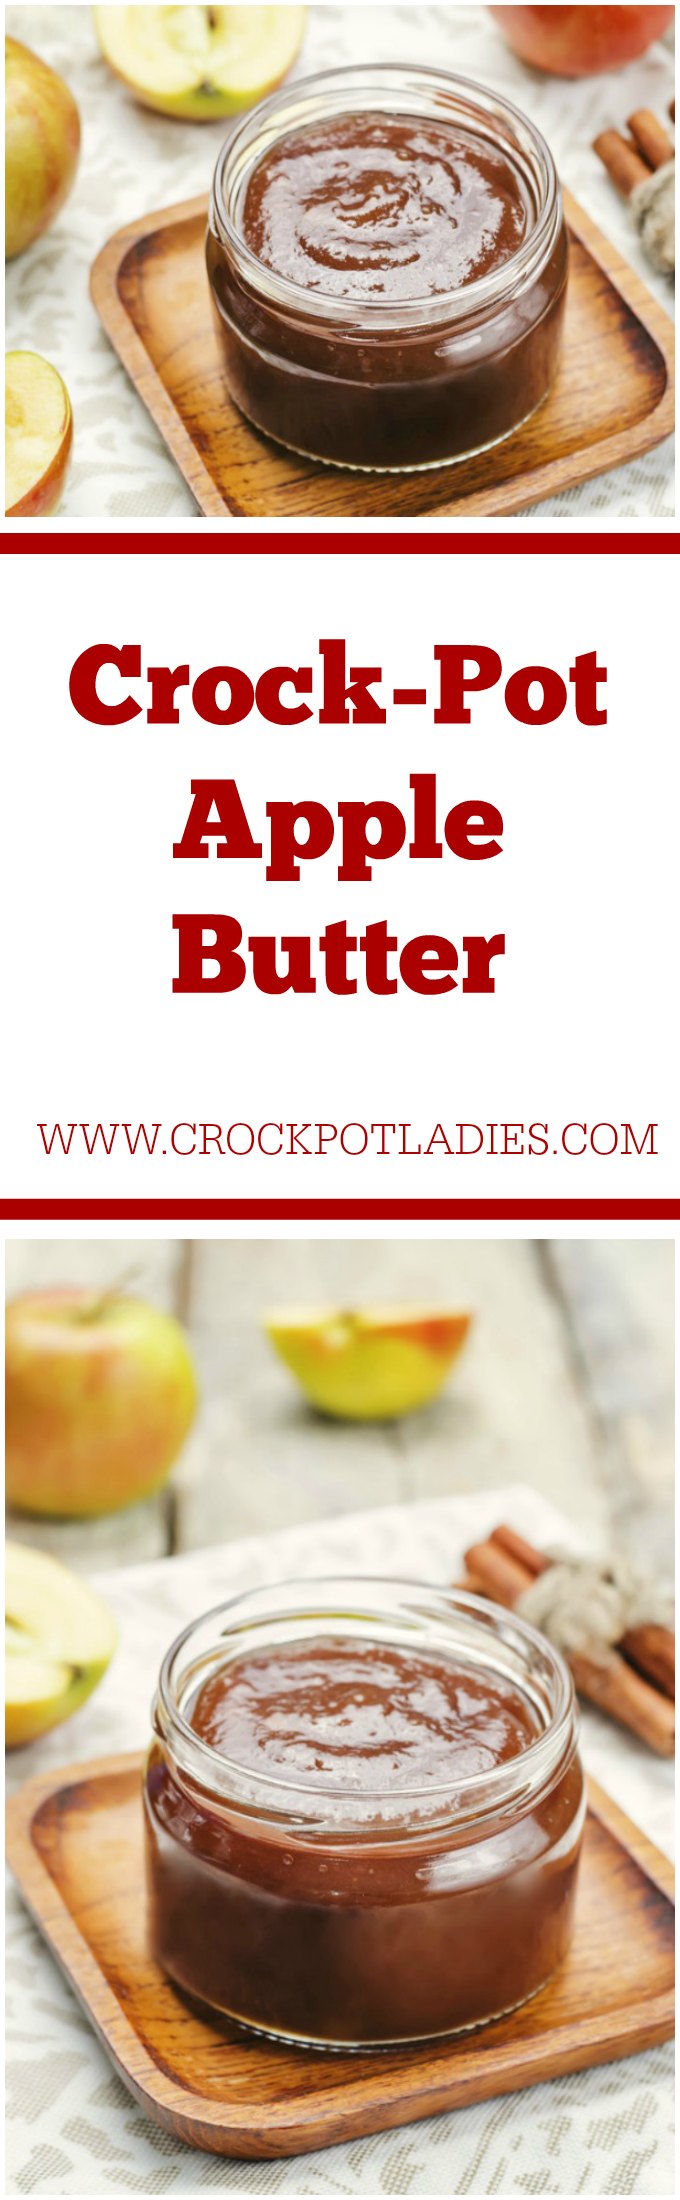 Crock-Pot Apple Butter